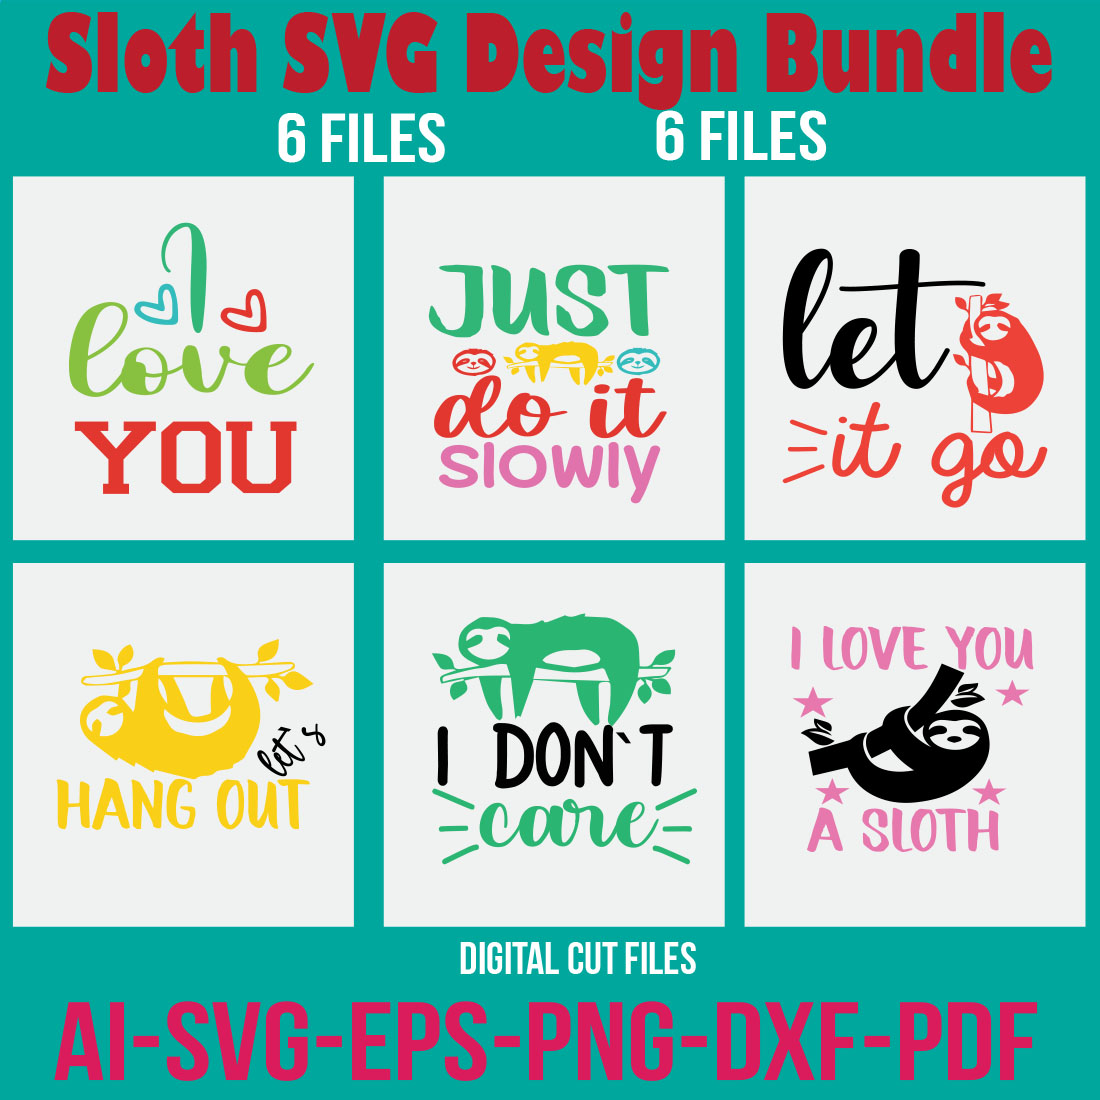 Sloth SVG Design Bundle cover image.